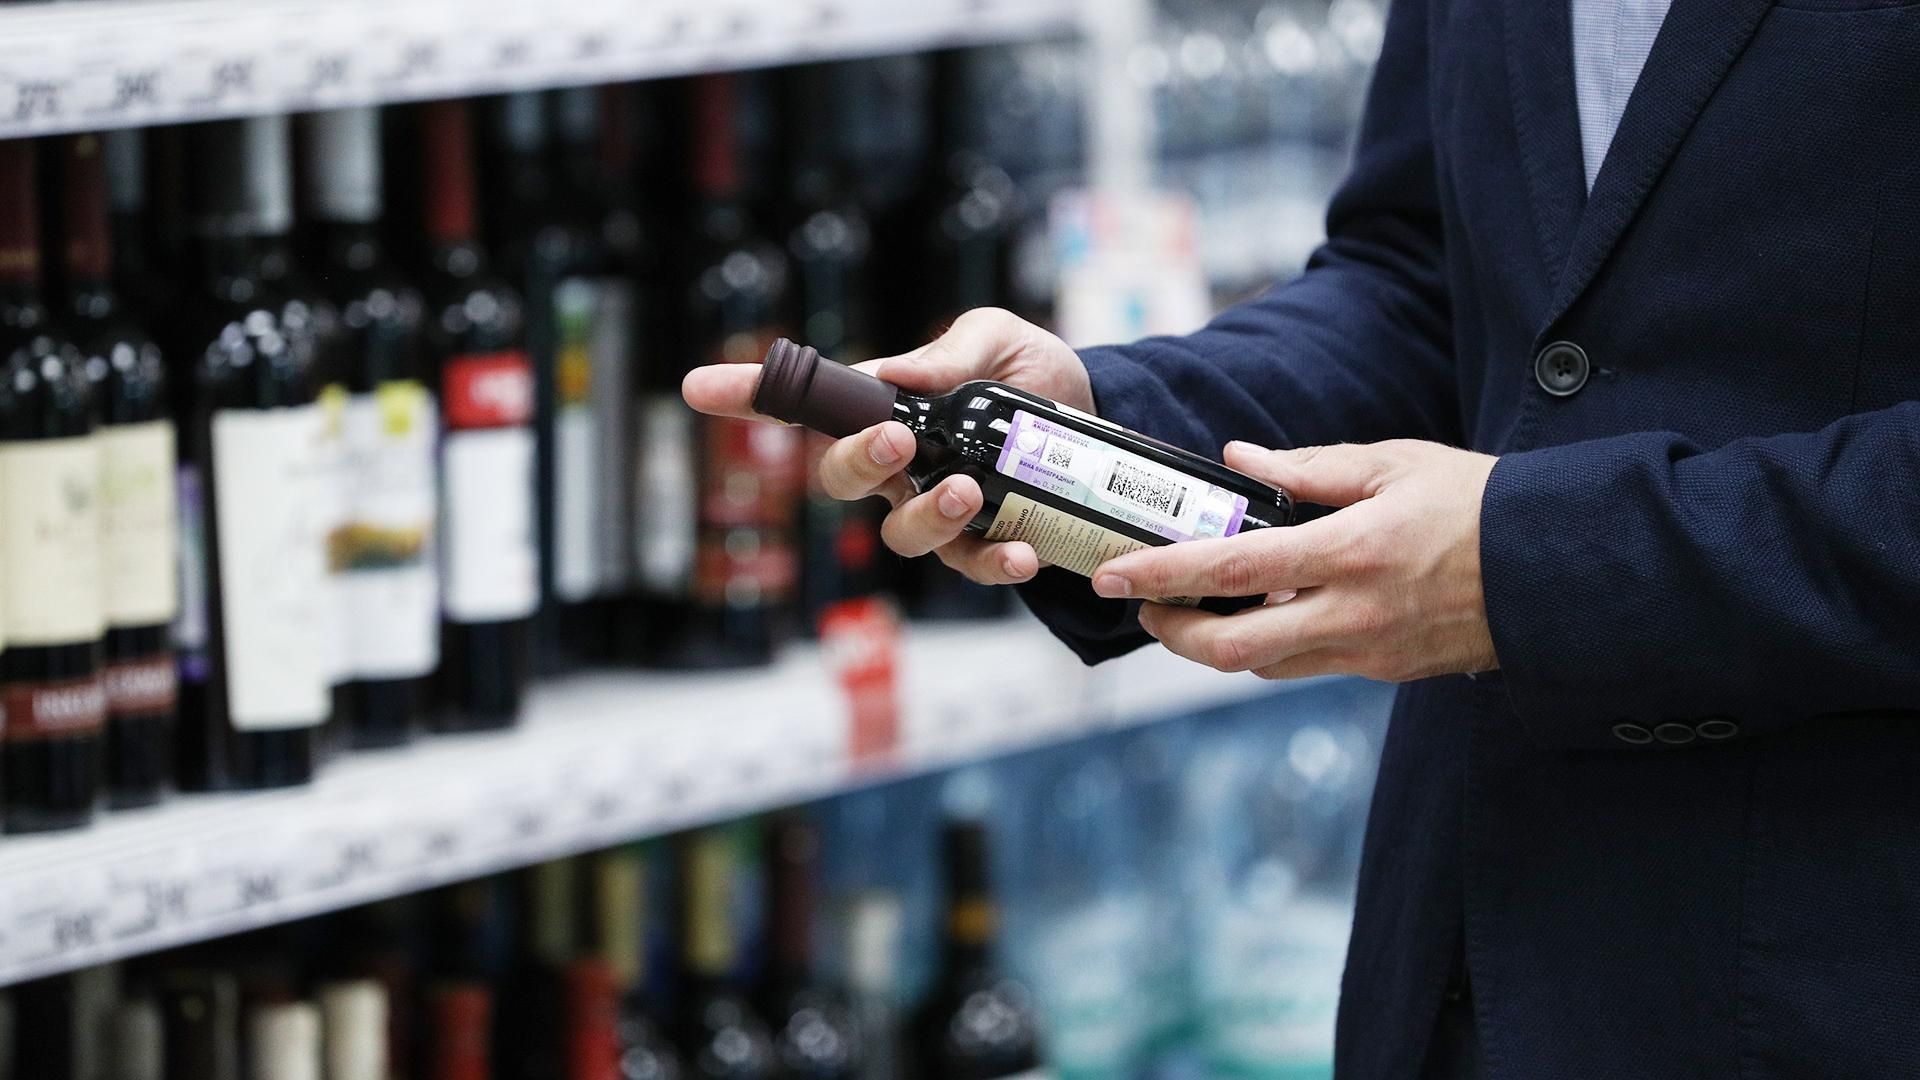 Ціни на алкоголь в Україні можуть зрости: на скільки зросте вартість - Економічні новини України - Економіка